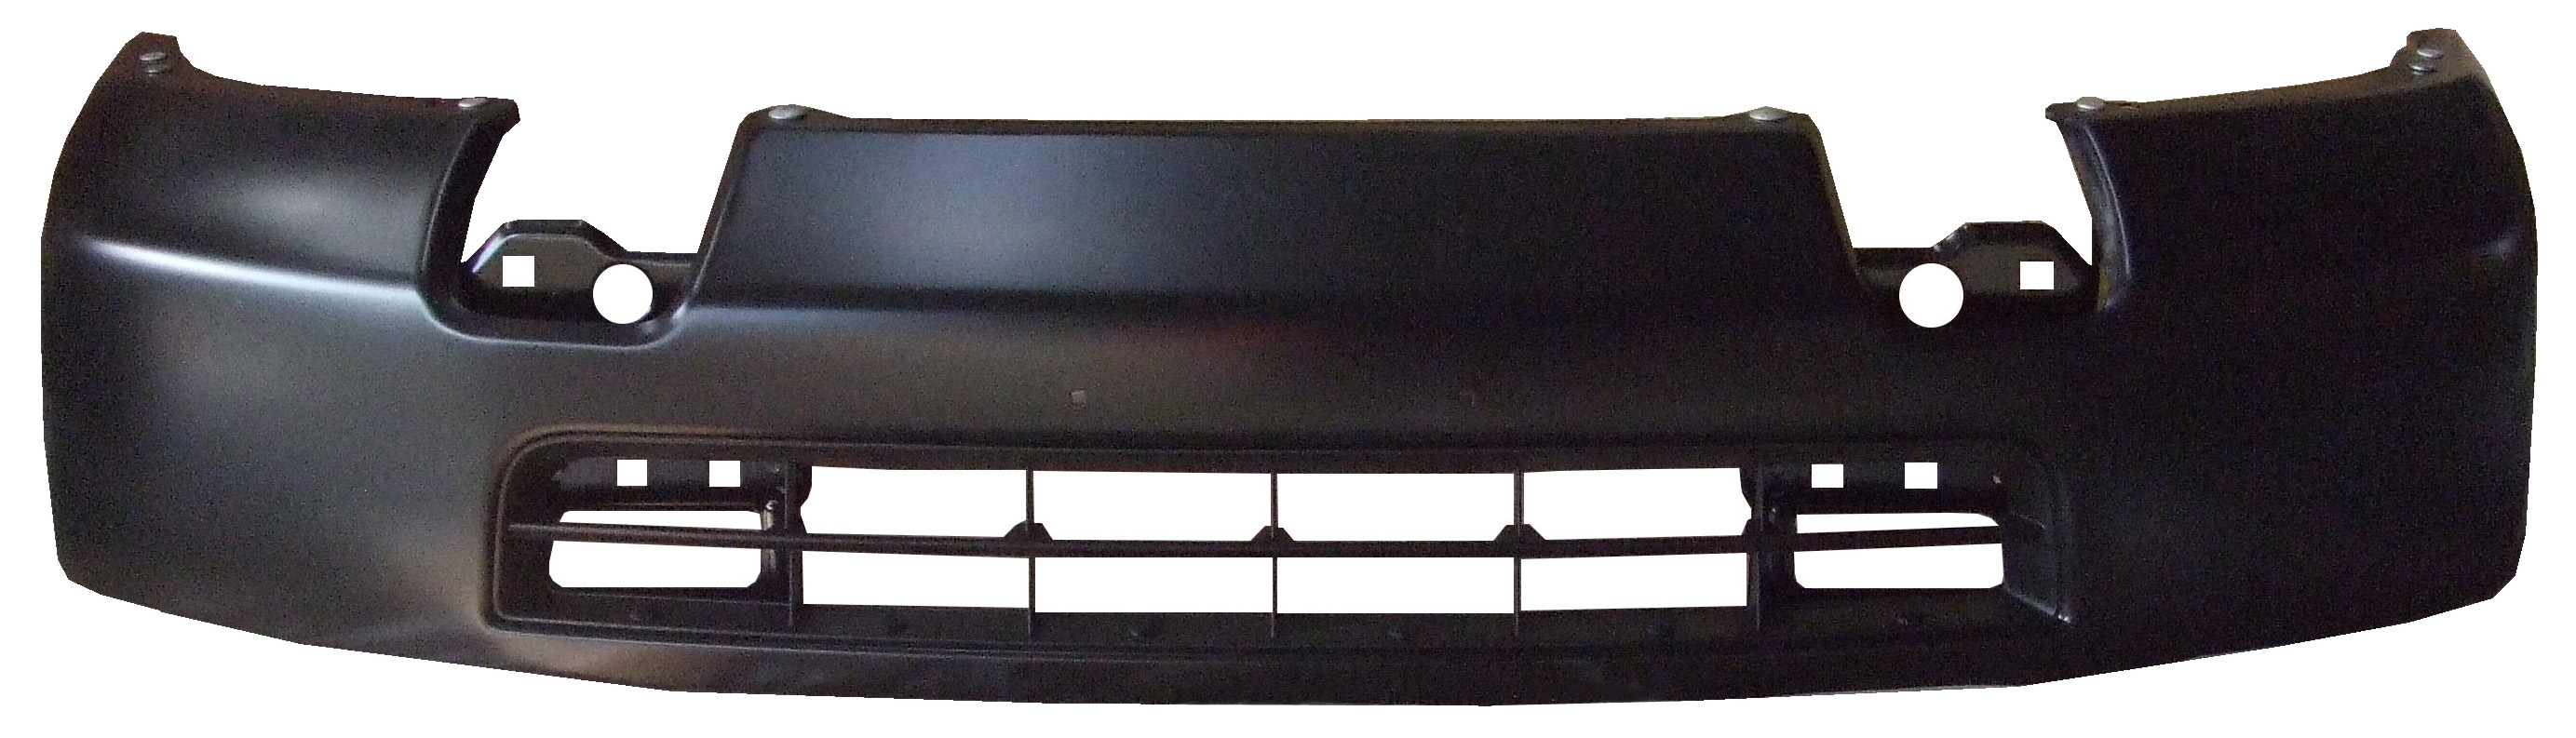 Aftermarket METAL FRONT BUMPERS for NISSAN - NV1500, NV1500,12-21,Front bumper face bar